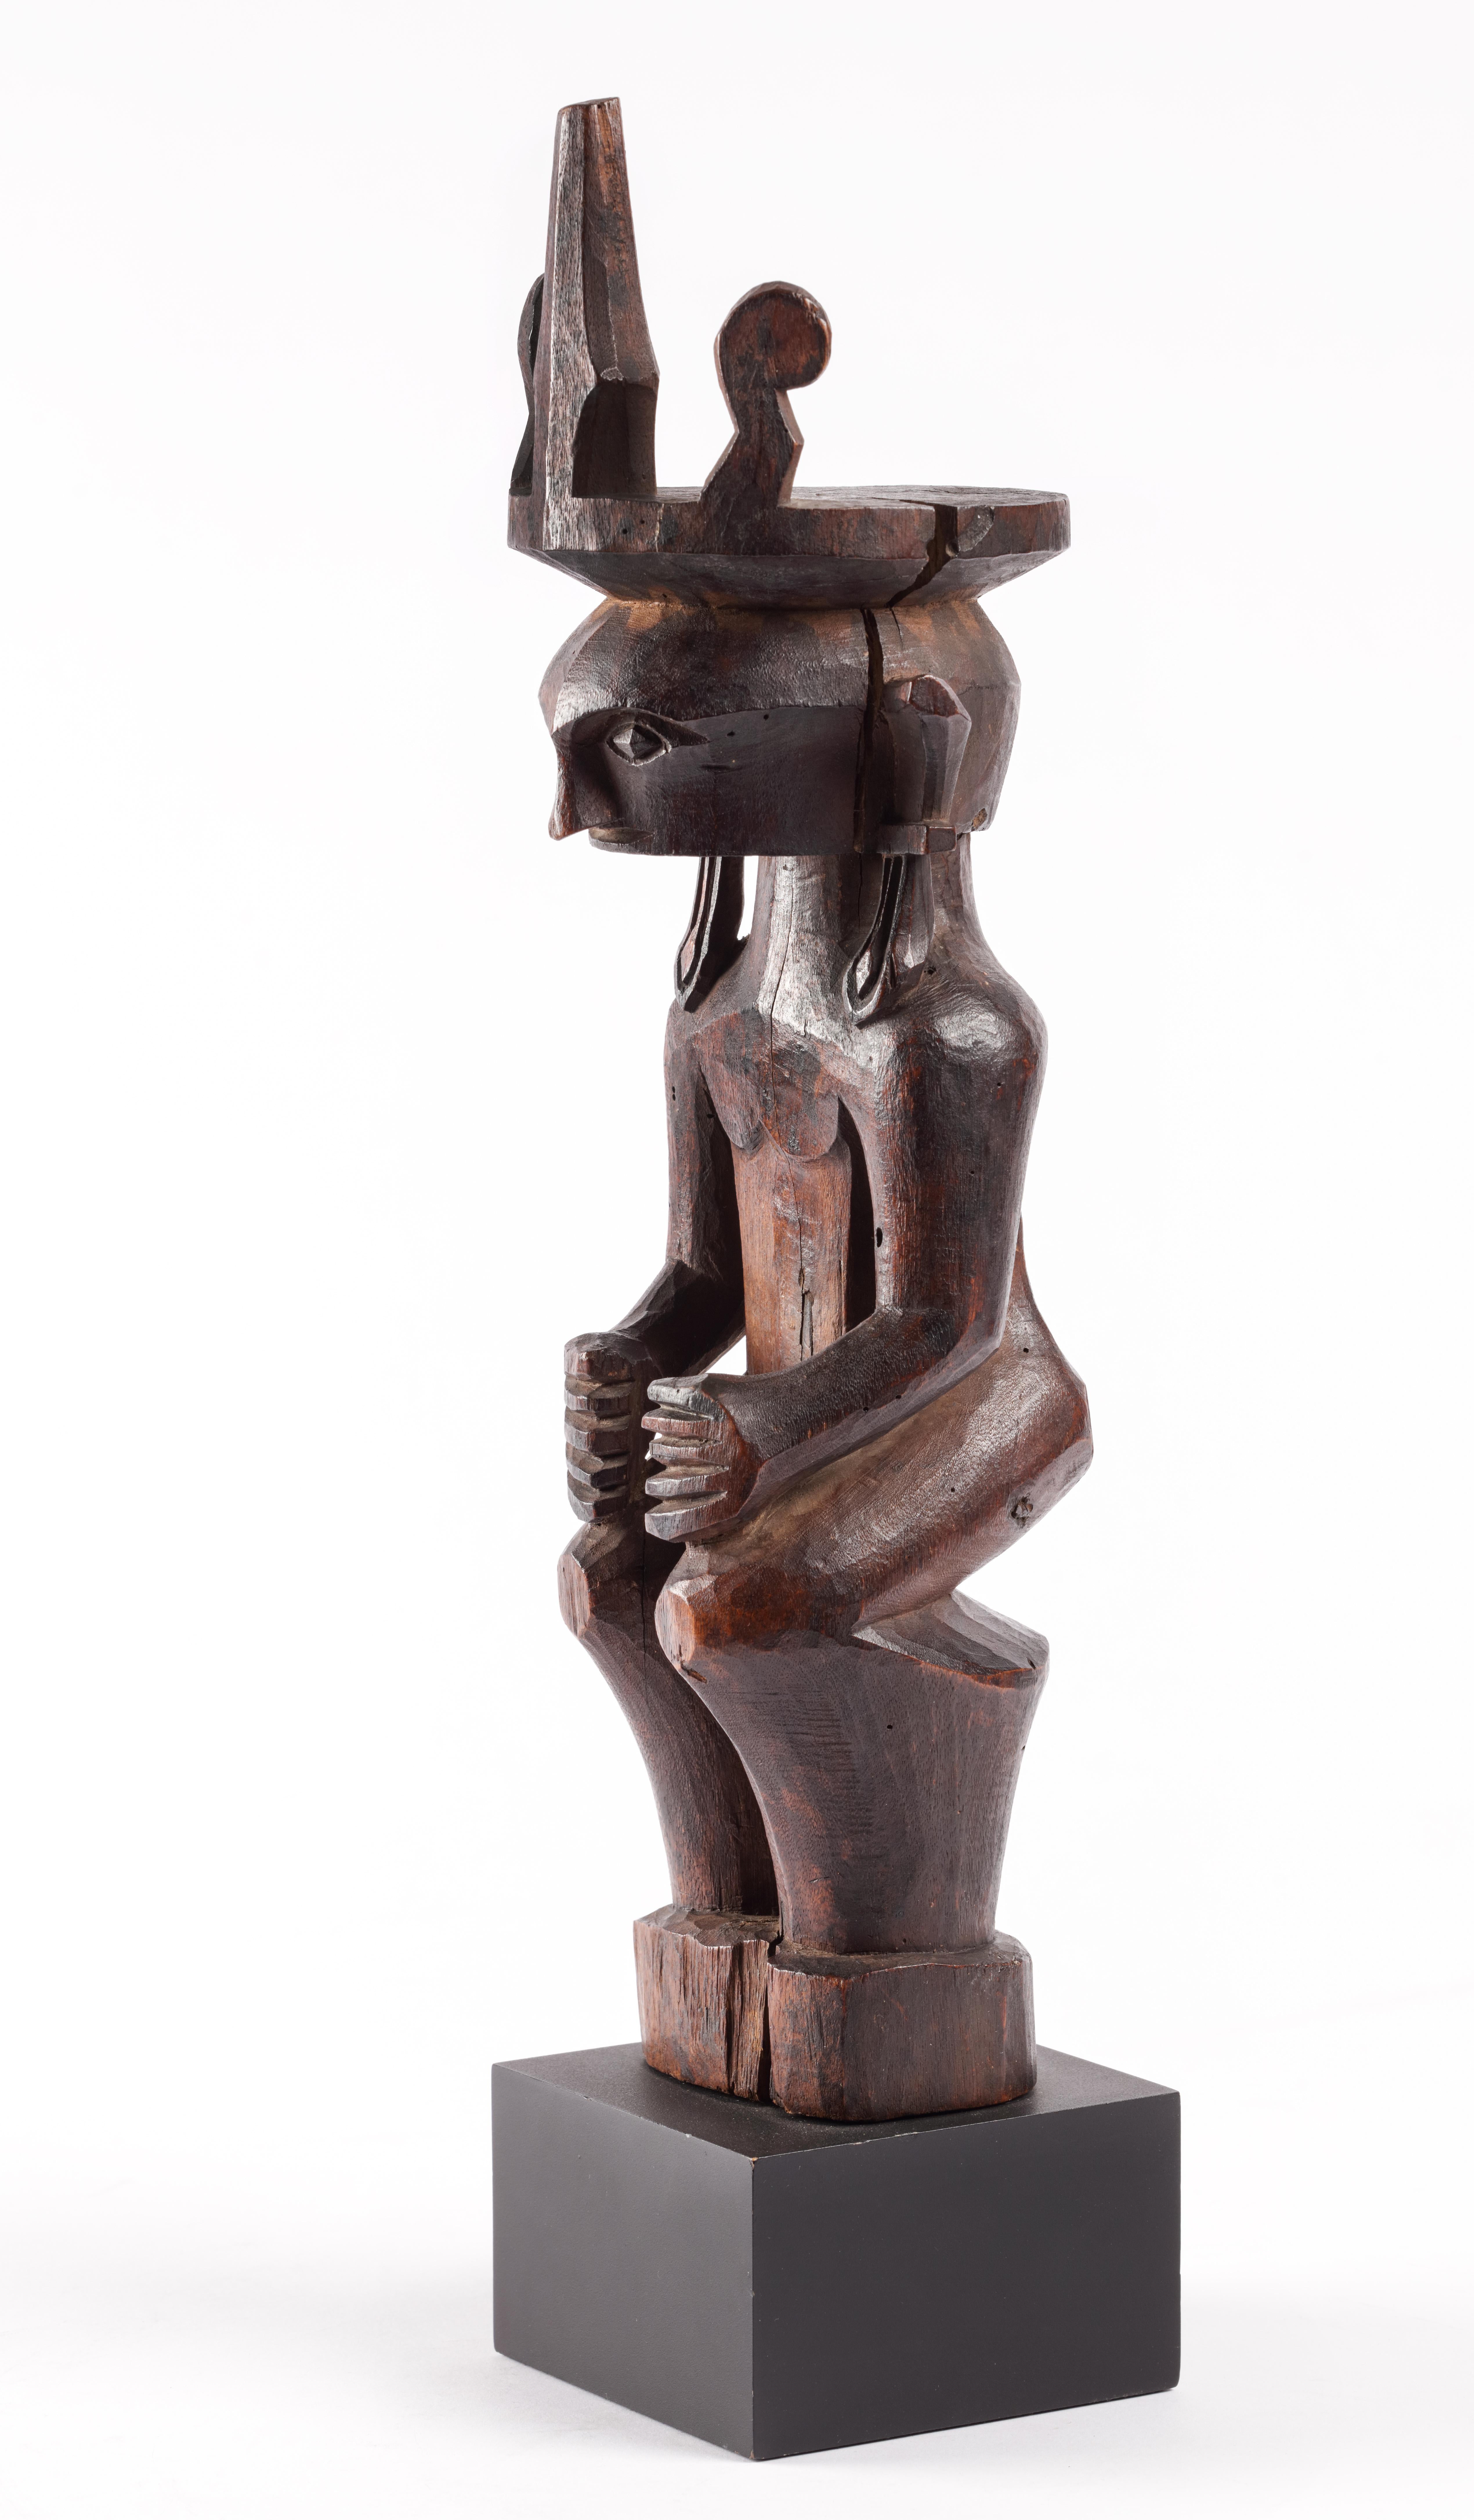 Indonesien, Nias, 19. Jahrhundert 

H. 37,5 x B. 10 cm

Skulpturen wie die vorliegende sind nicht nur Dekorationsgegenstände, sondern gelten als Gefäße, die die Geister der Vorfahren beherbergen und zur Kommunikation mit ihnen dienen.

Nach dem Tod